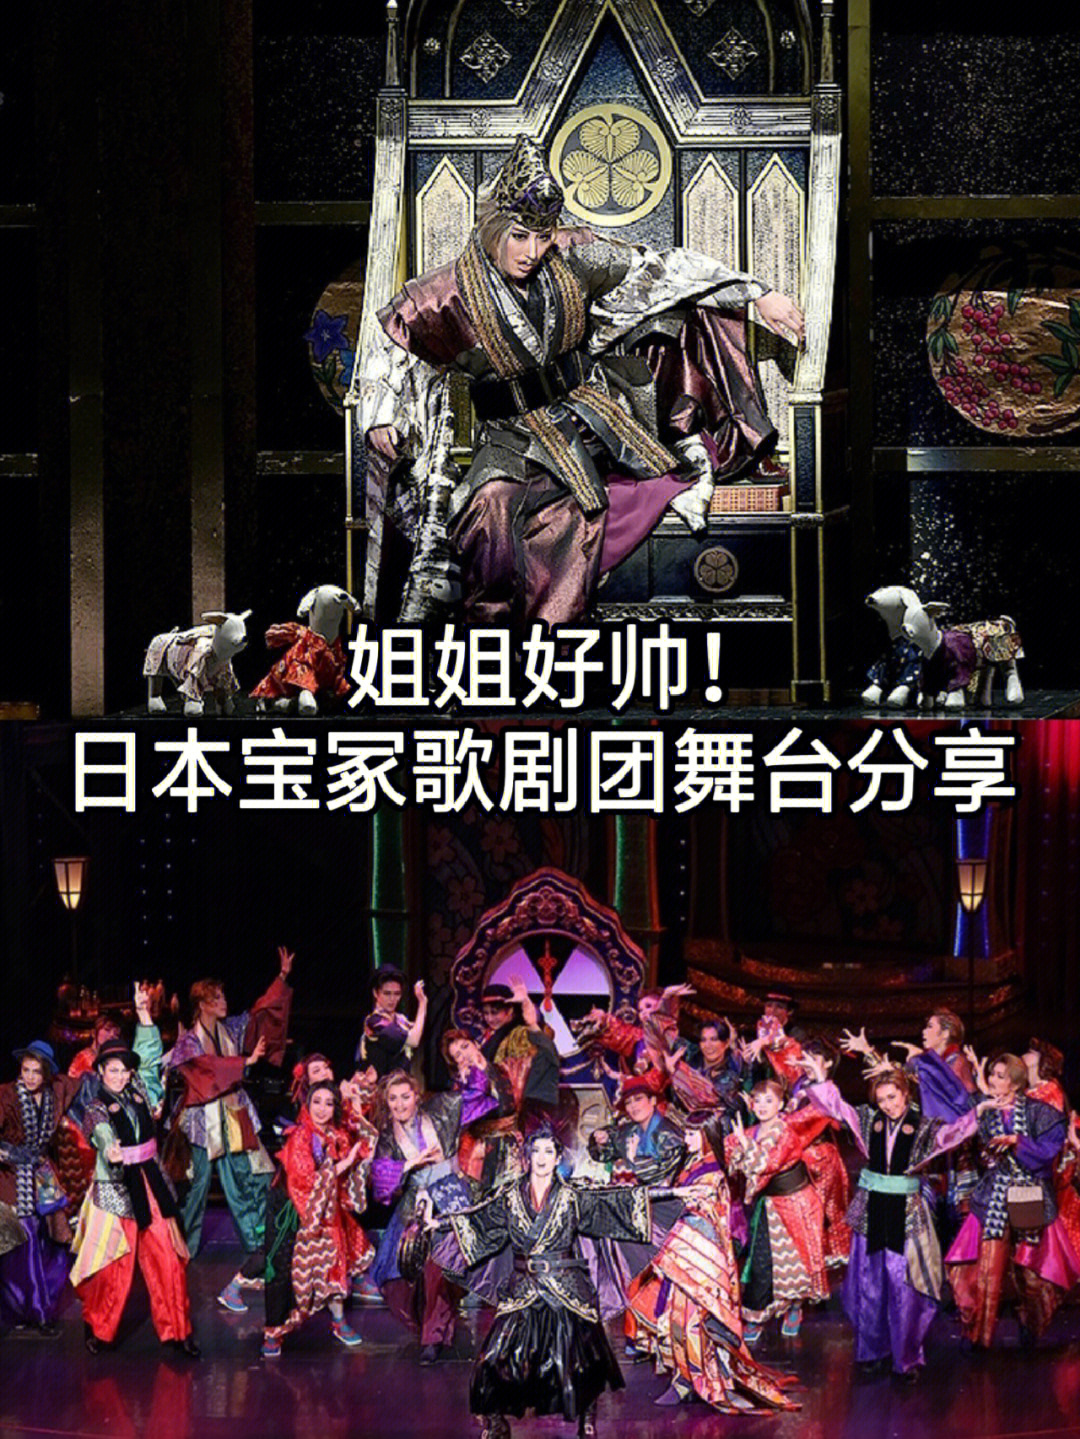 姐姐好帅!日本国民级宝冢歌剧团舞台分享!